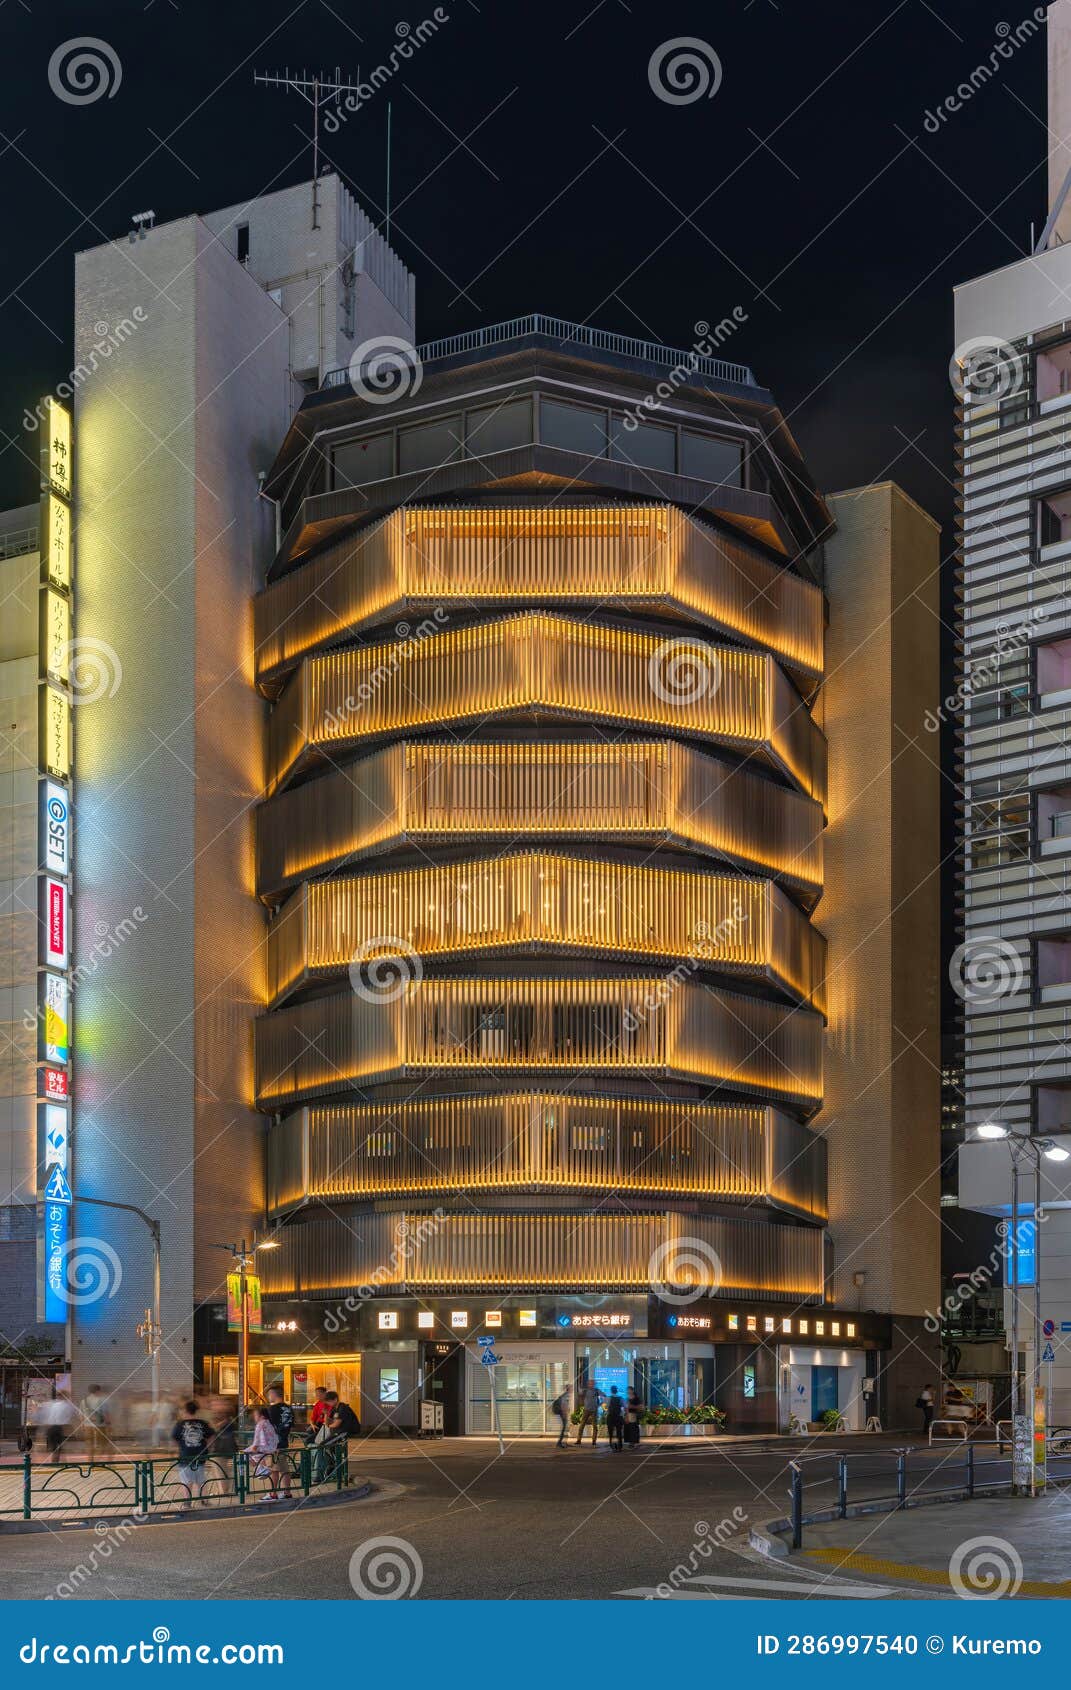 Yasuyo Building In Shinjuku Designed With Illuminated Shapes Of Stacked